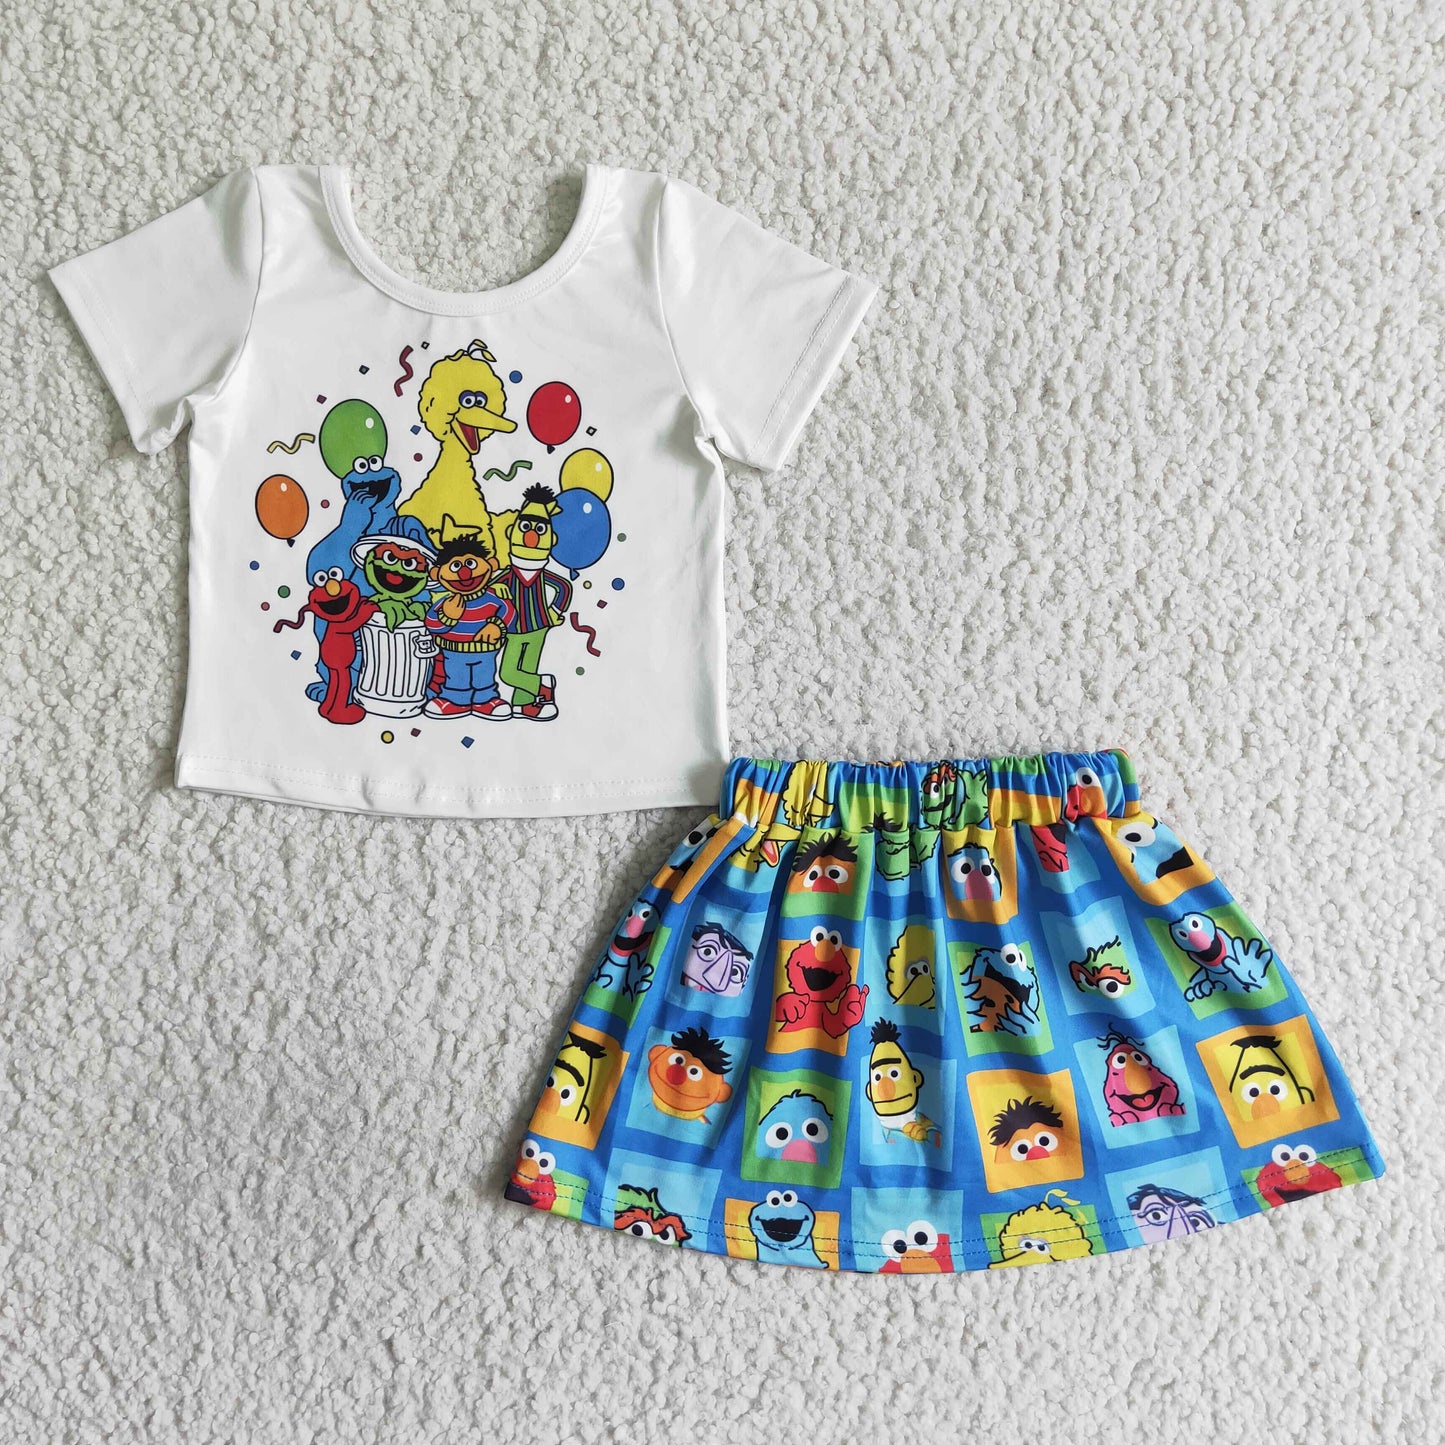 Balloon cute shirt match skirt girls set